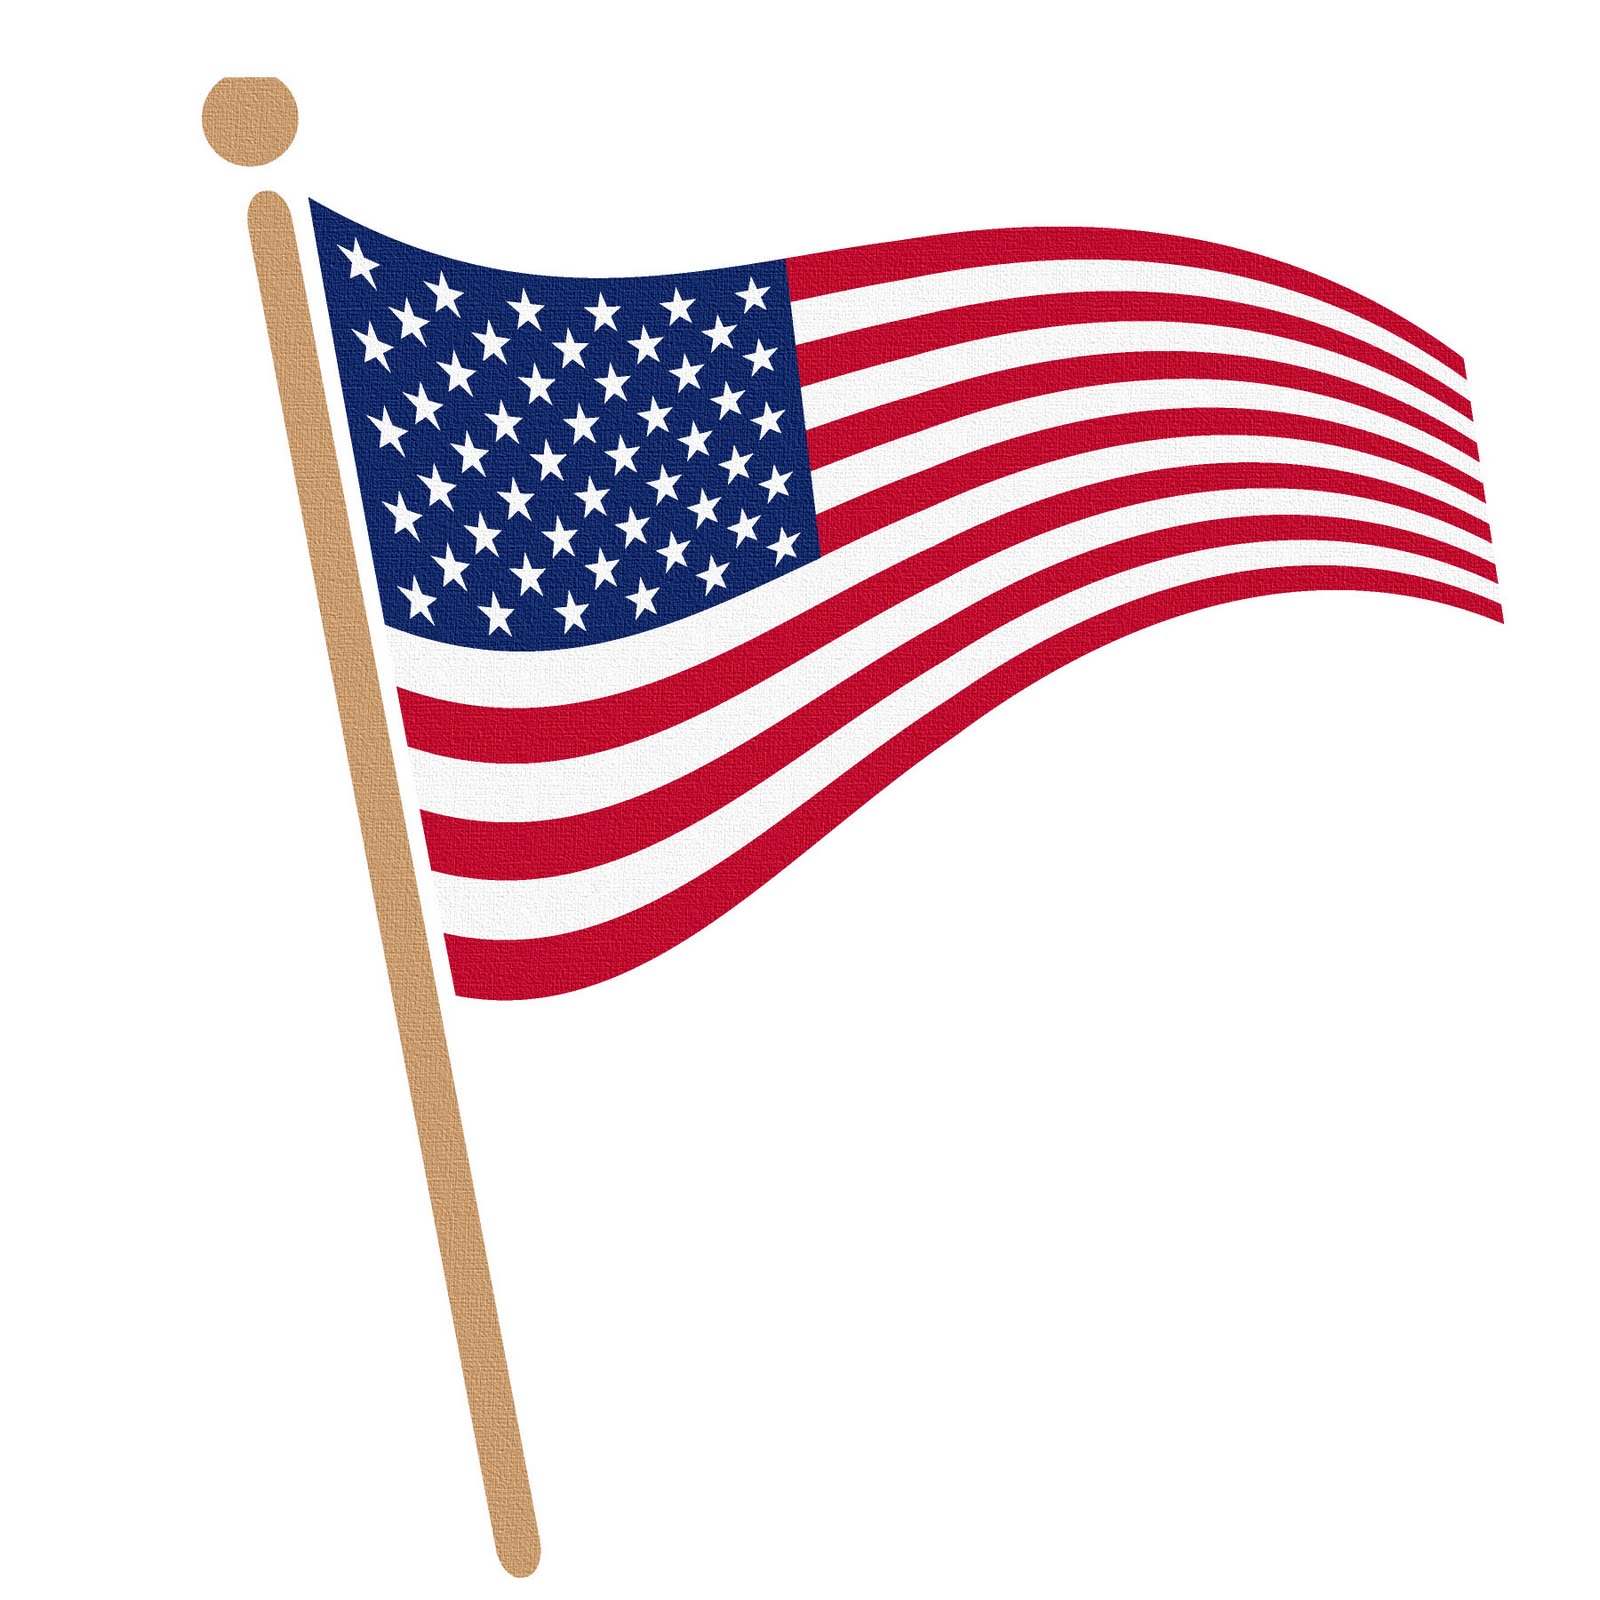 American flag clip art vectors download free vector art image 8 